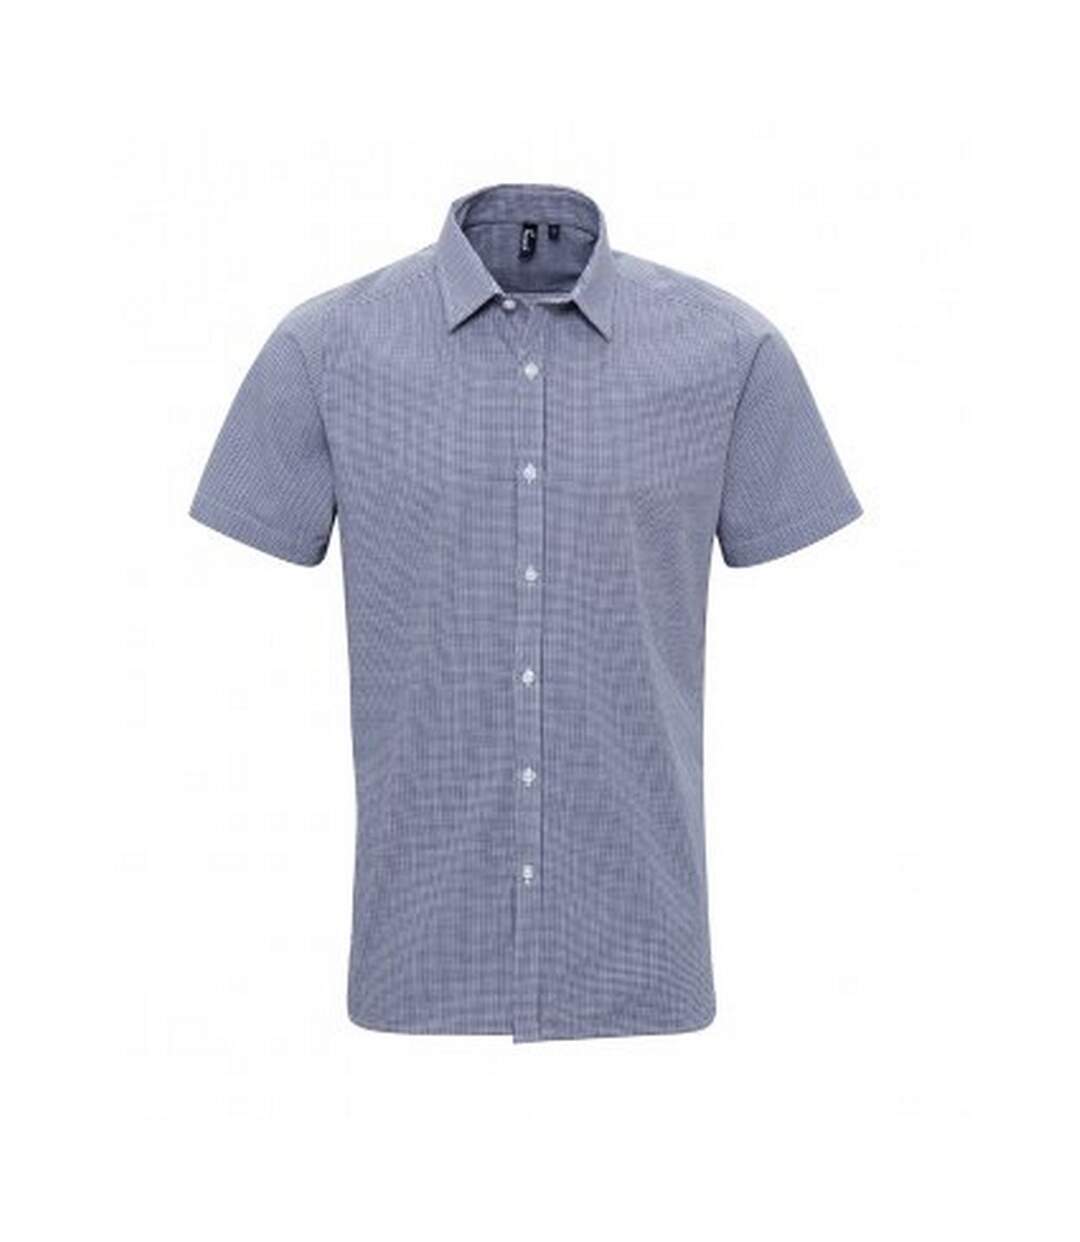 Premier Mens Gingham Short Sleeve Shirt (Navy/White) - UTPC3100